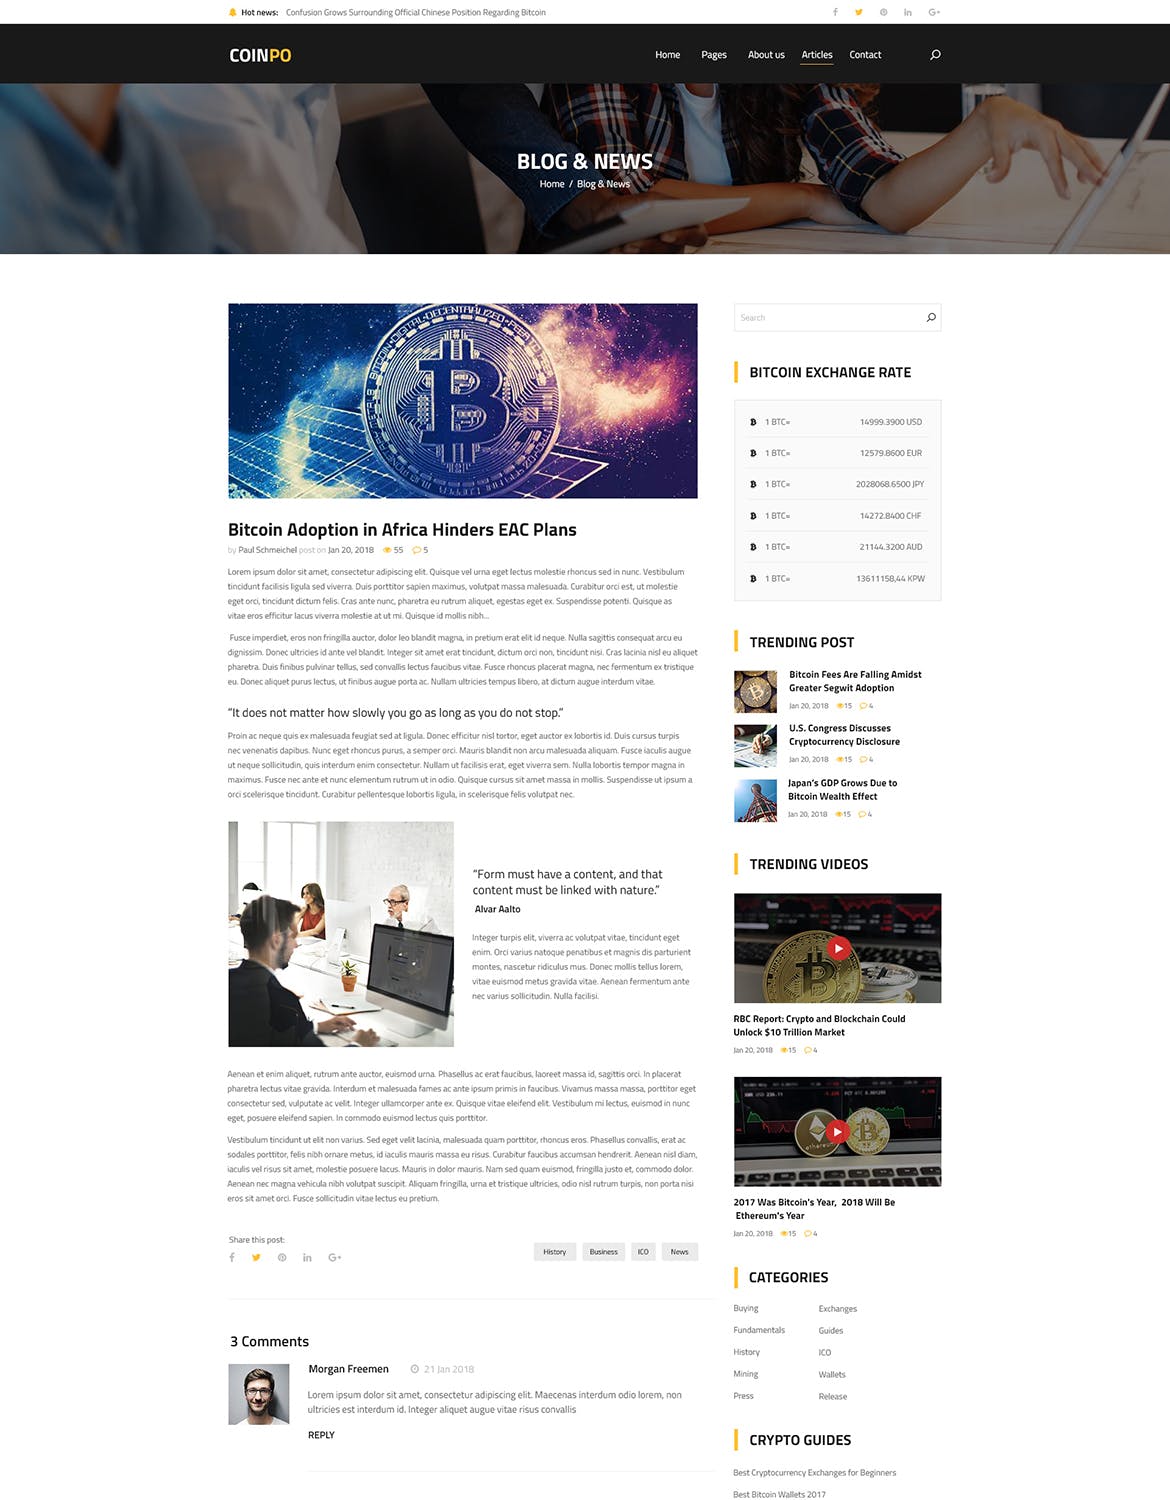 比特币/加密货币主题网站设计PSD模板 Coinpo | Bitcoin & Crypto Currency PSD Template插图(11)